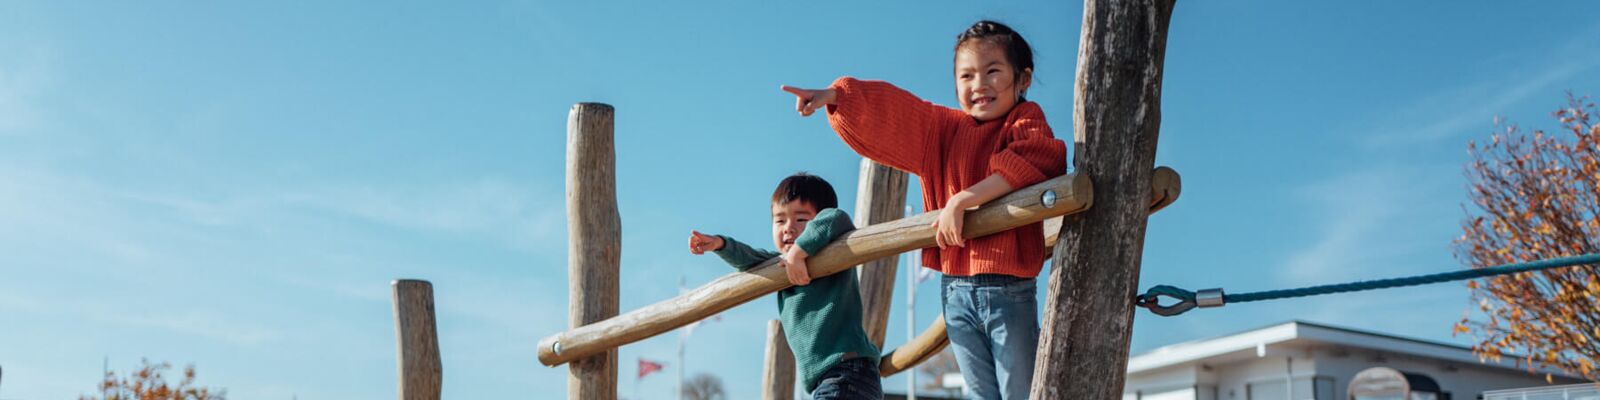 Kinder spielen auf dem Spielplatz Yachthafen